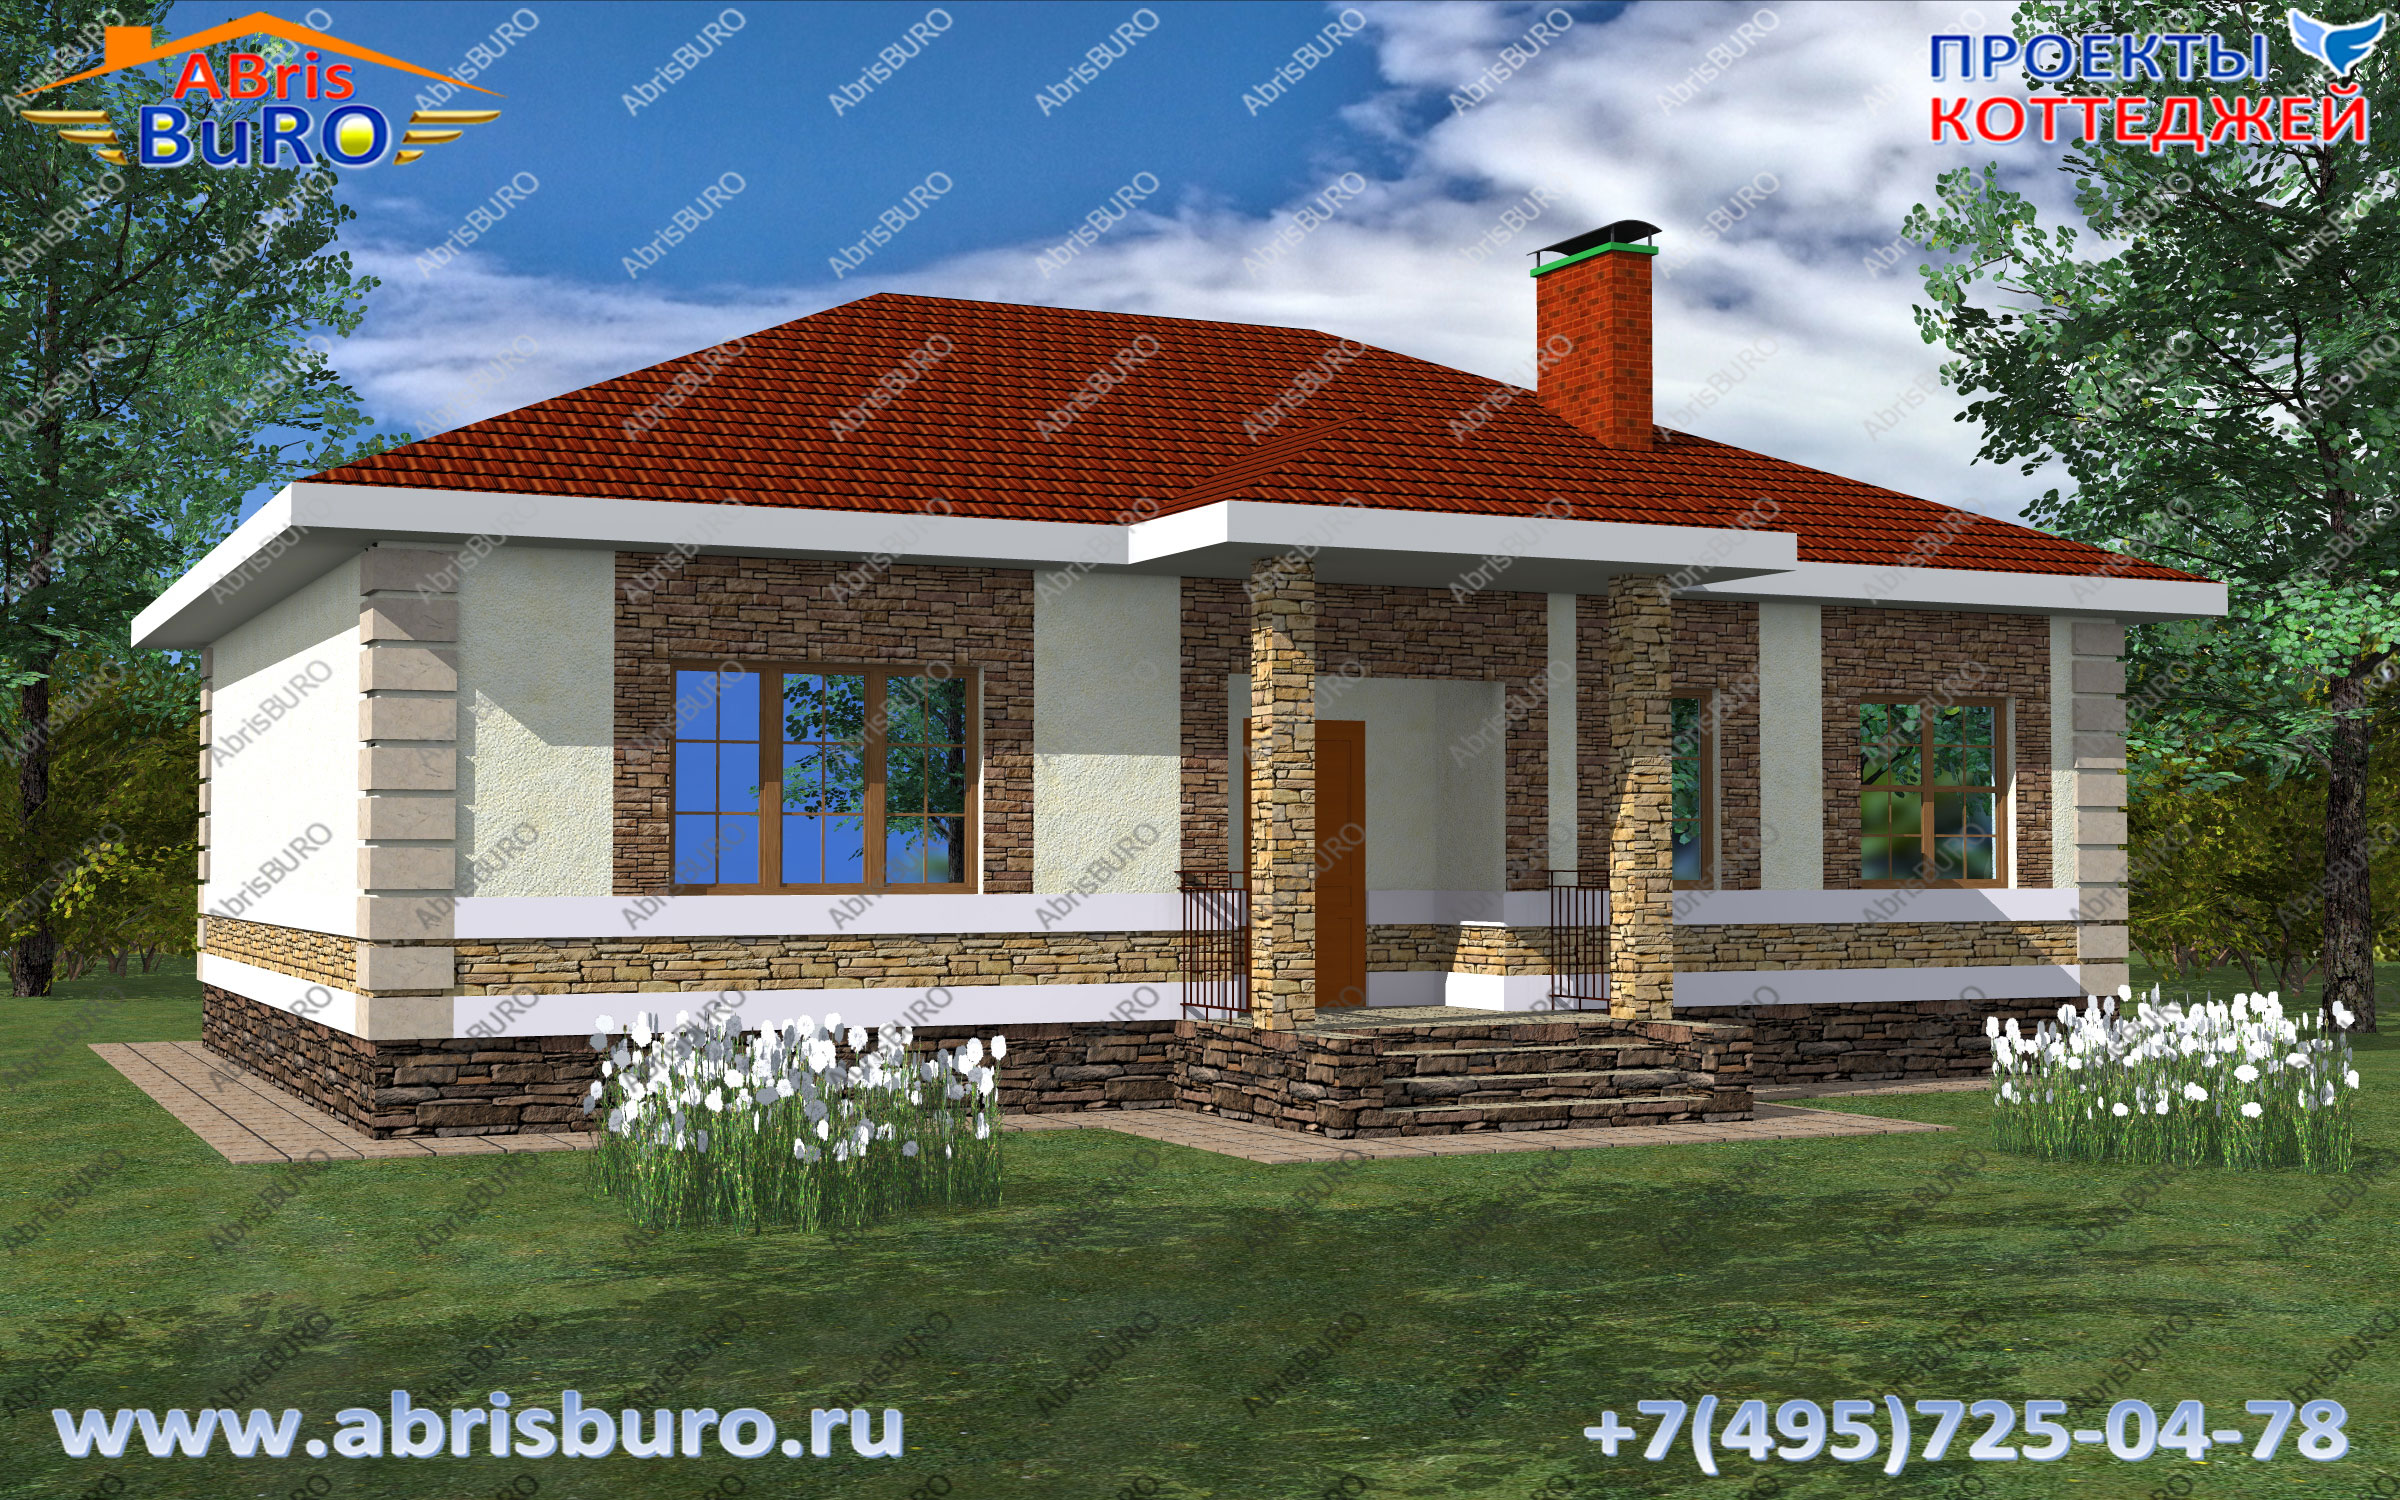 K0194-98 Проект дома с двумя спальнями на сайте www.abrisburo.ru